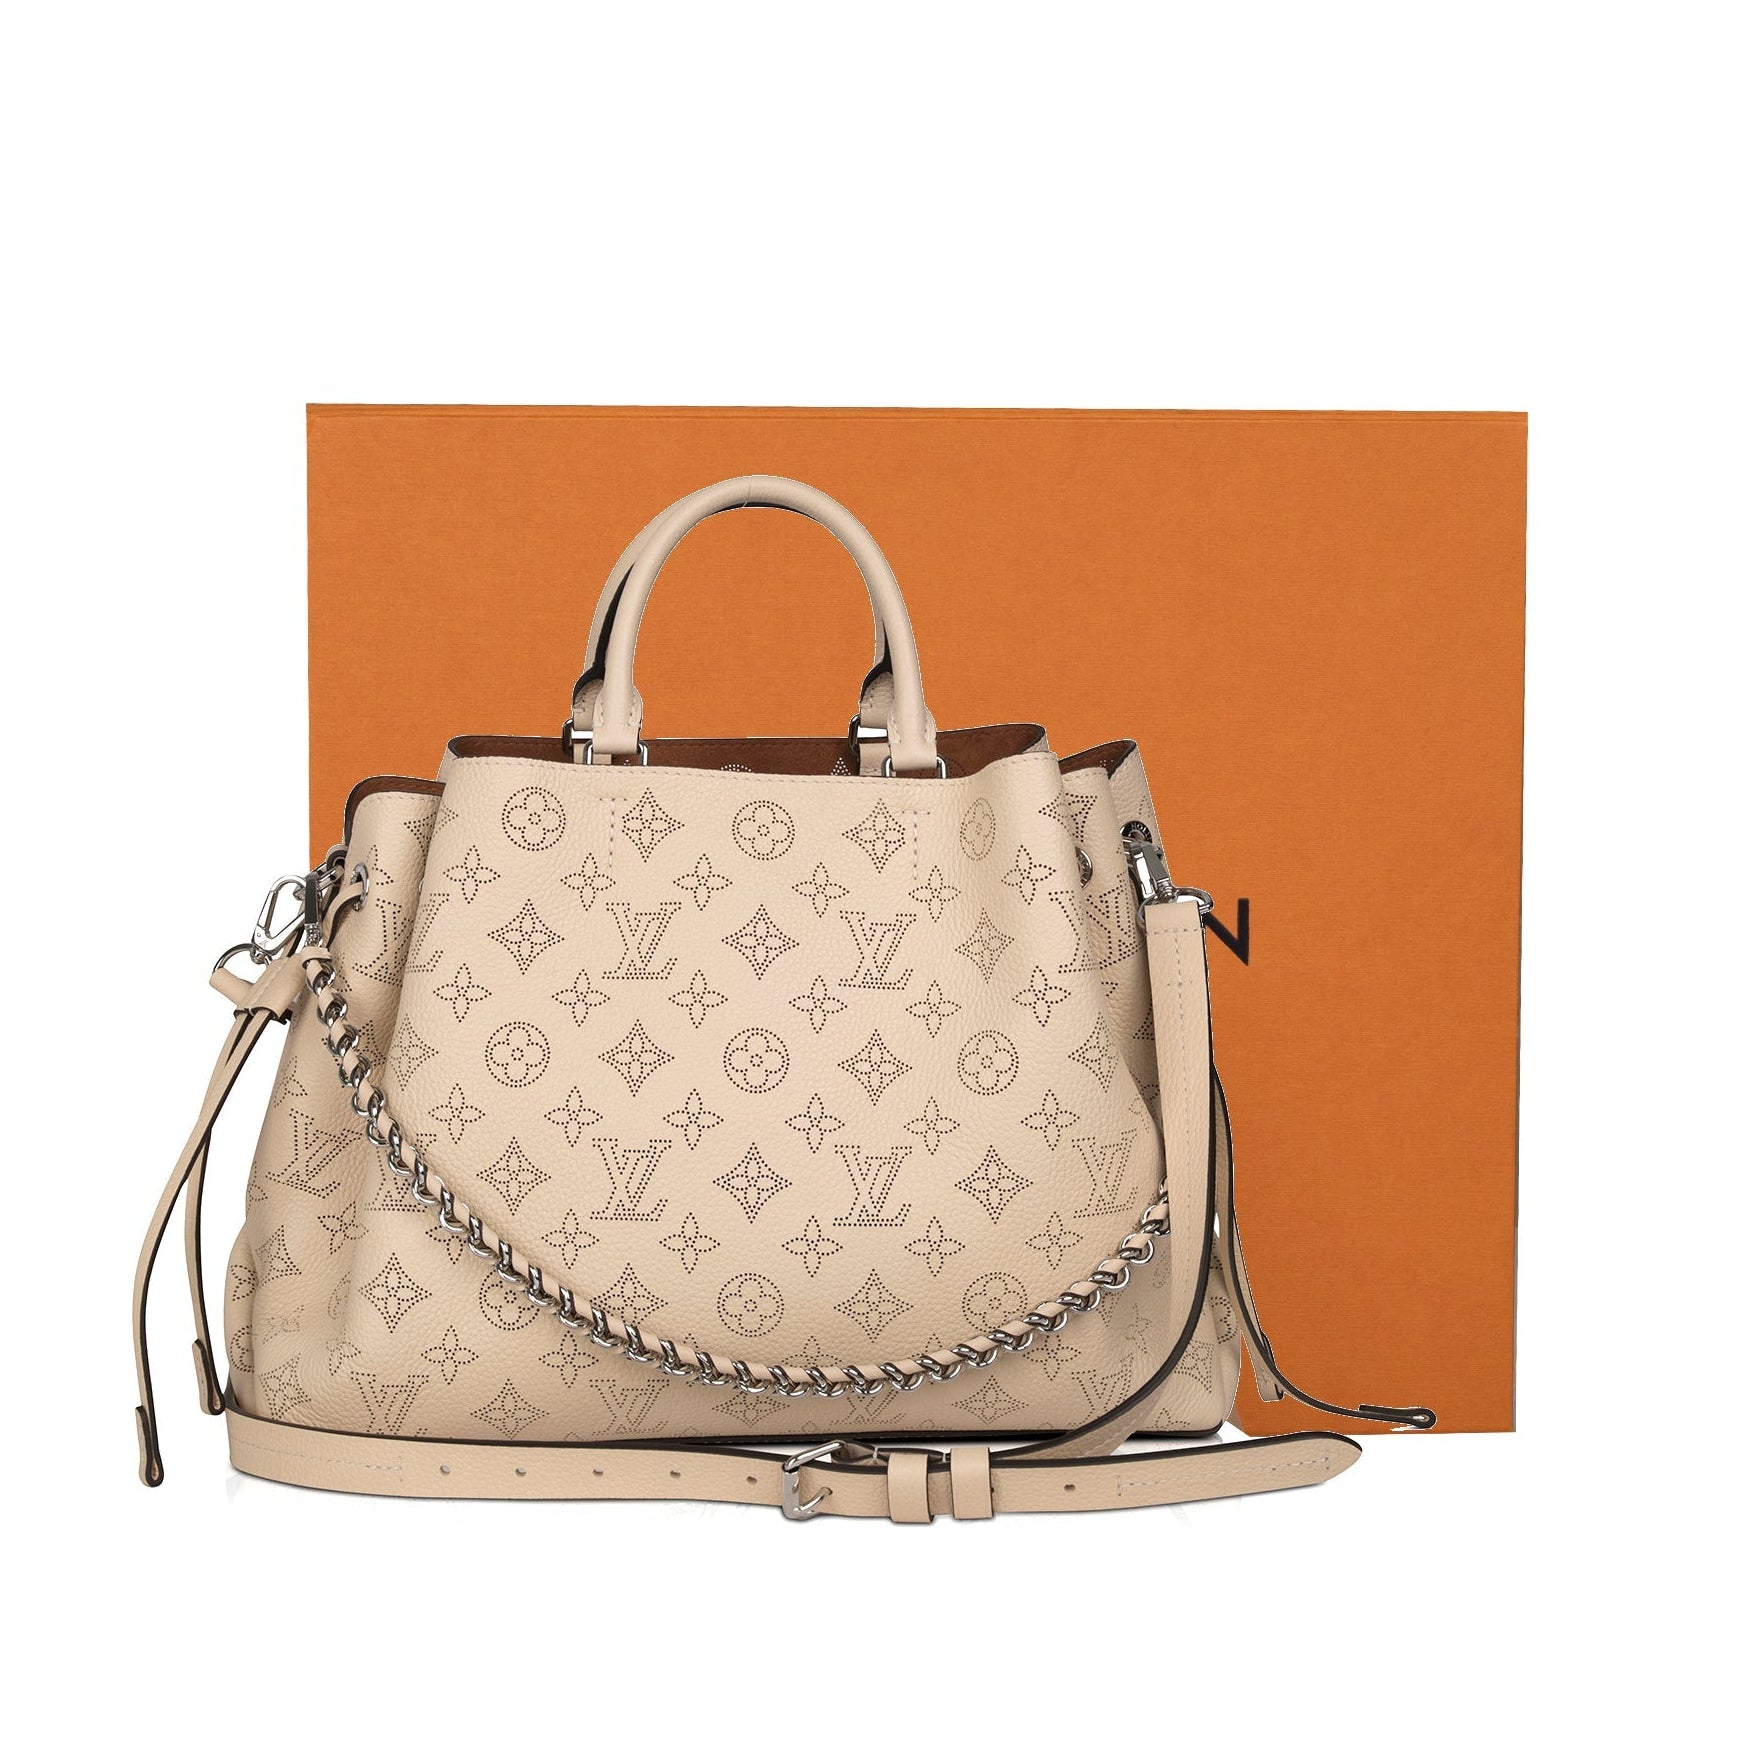 Shop Louis Vuitton MAHINA Bella (M57068, M57070, M57201) by Sincerity_m639